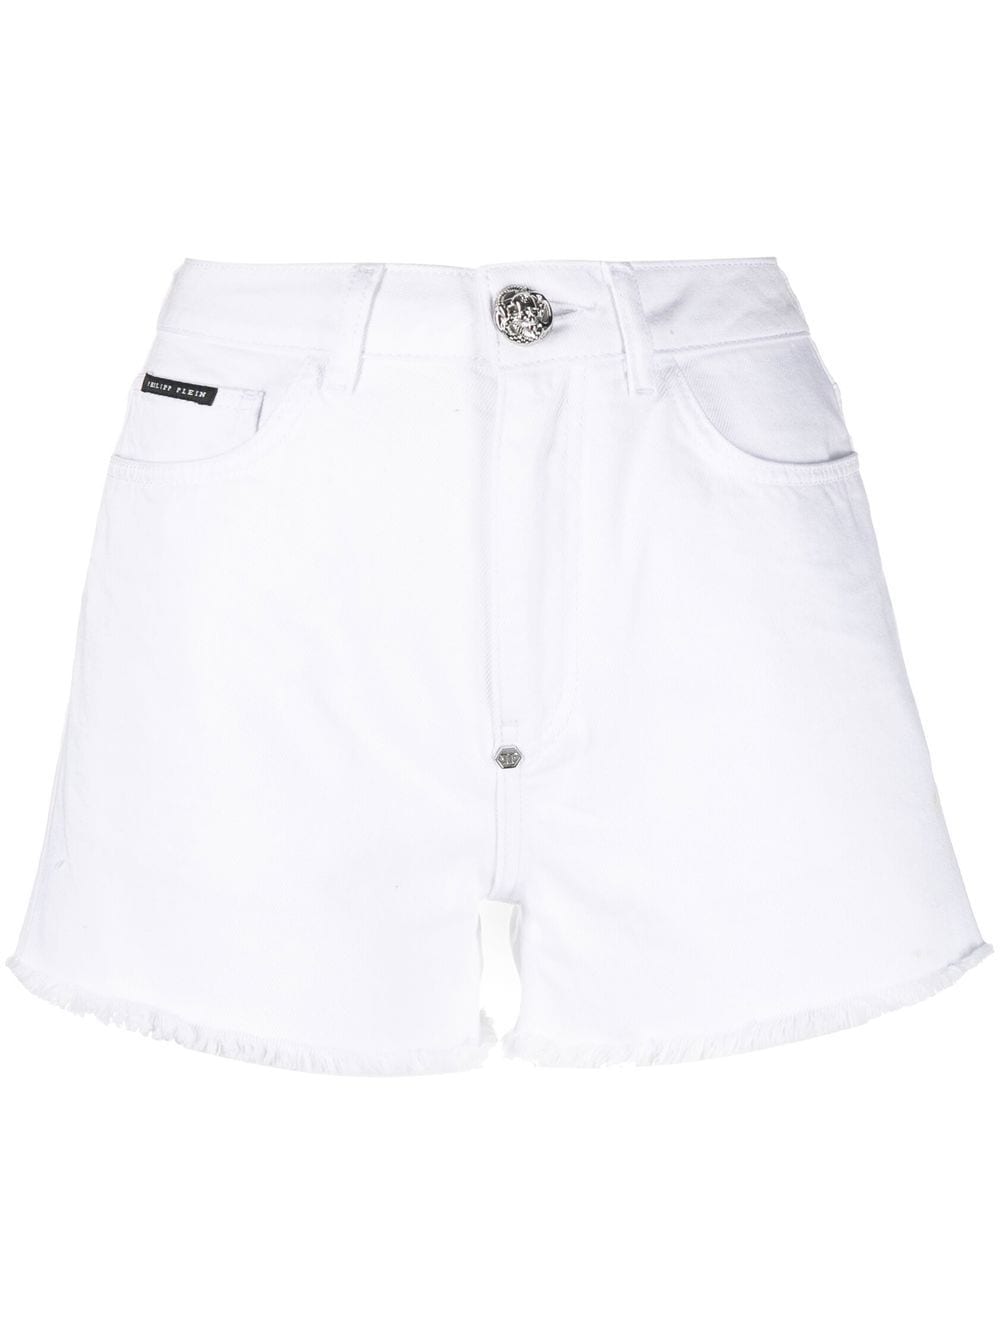 Philipp Plein Jeans-Shorts mit Kristallen - Weiß von Philipp Plein